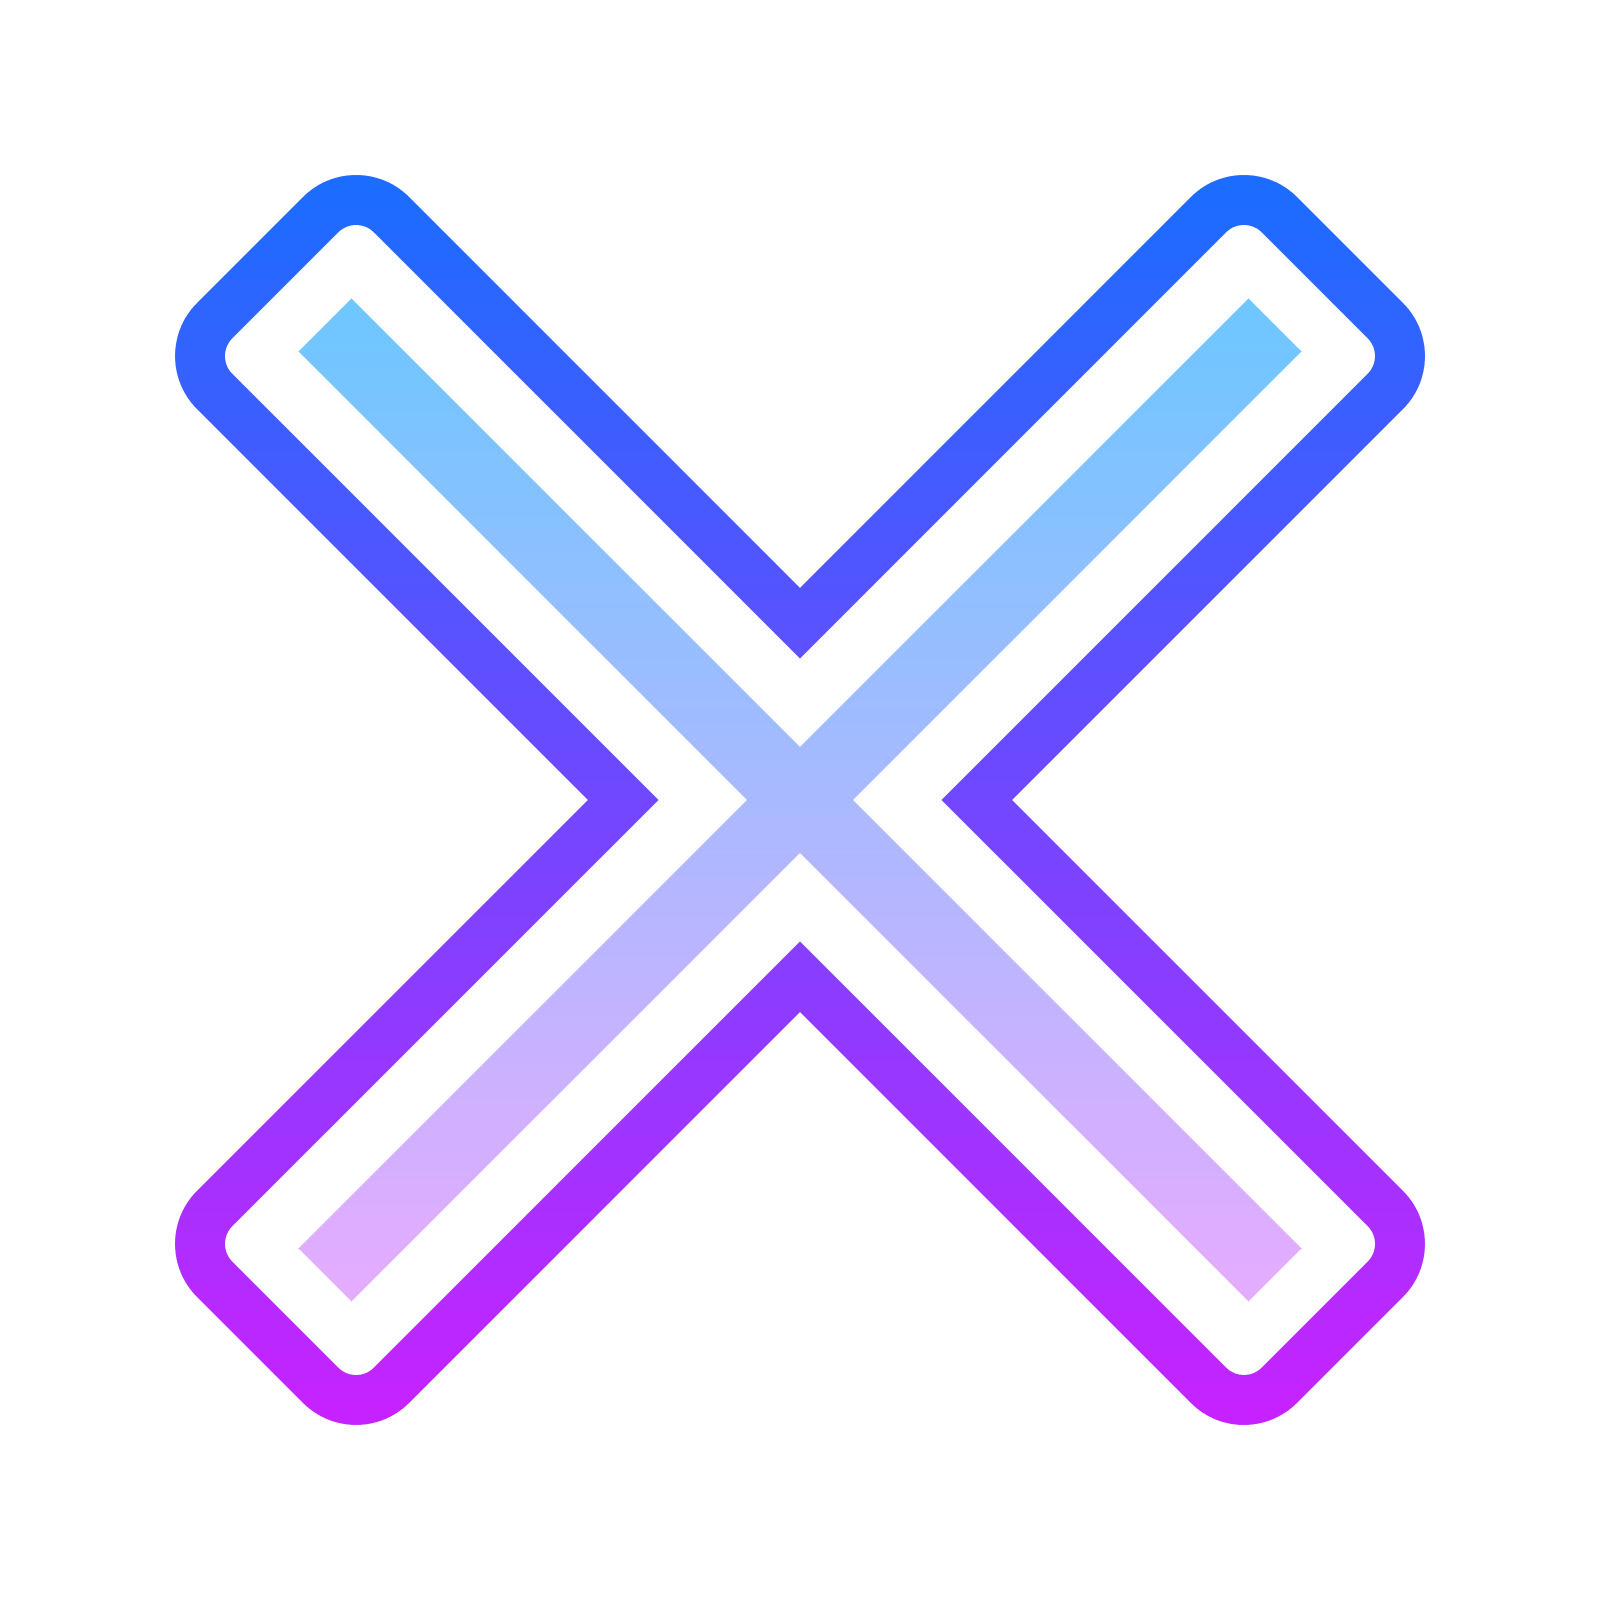 x cross freetoedit #x #cross sticker by @nnnkkka